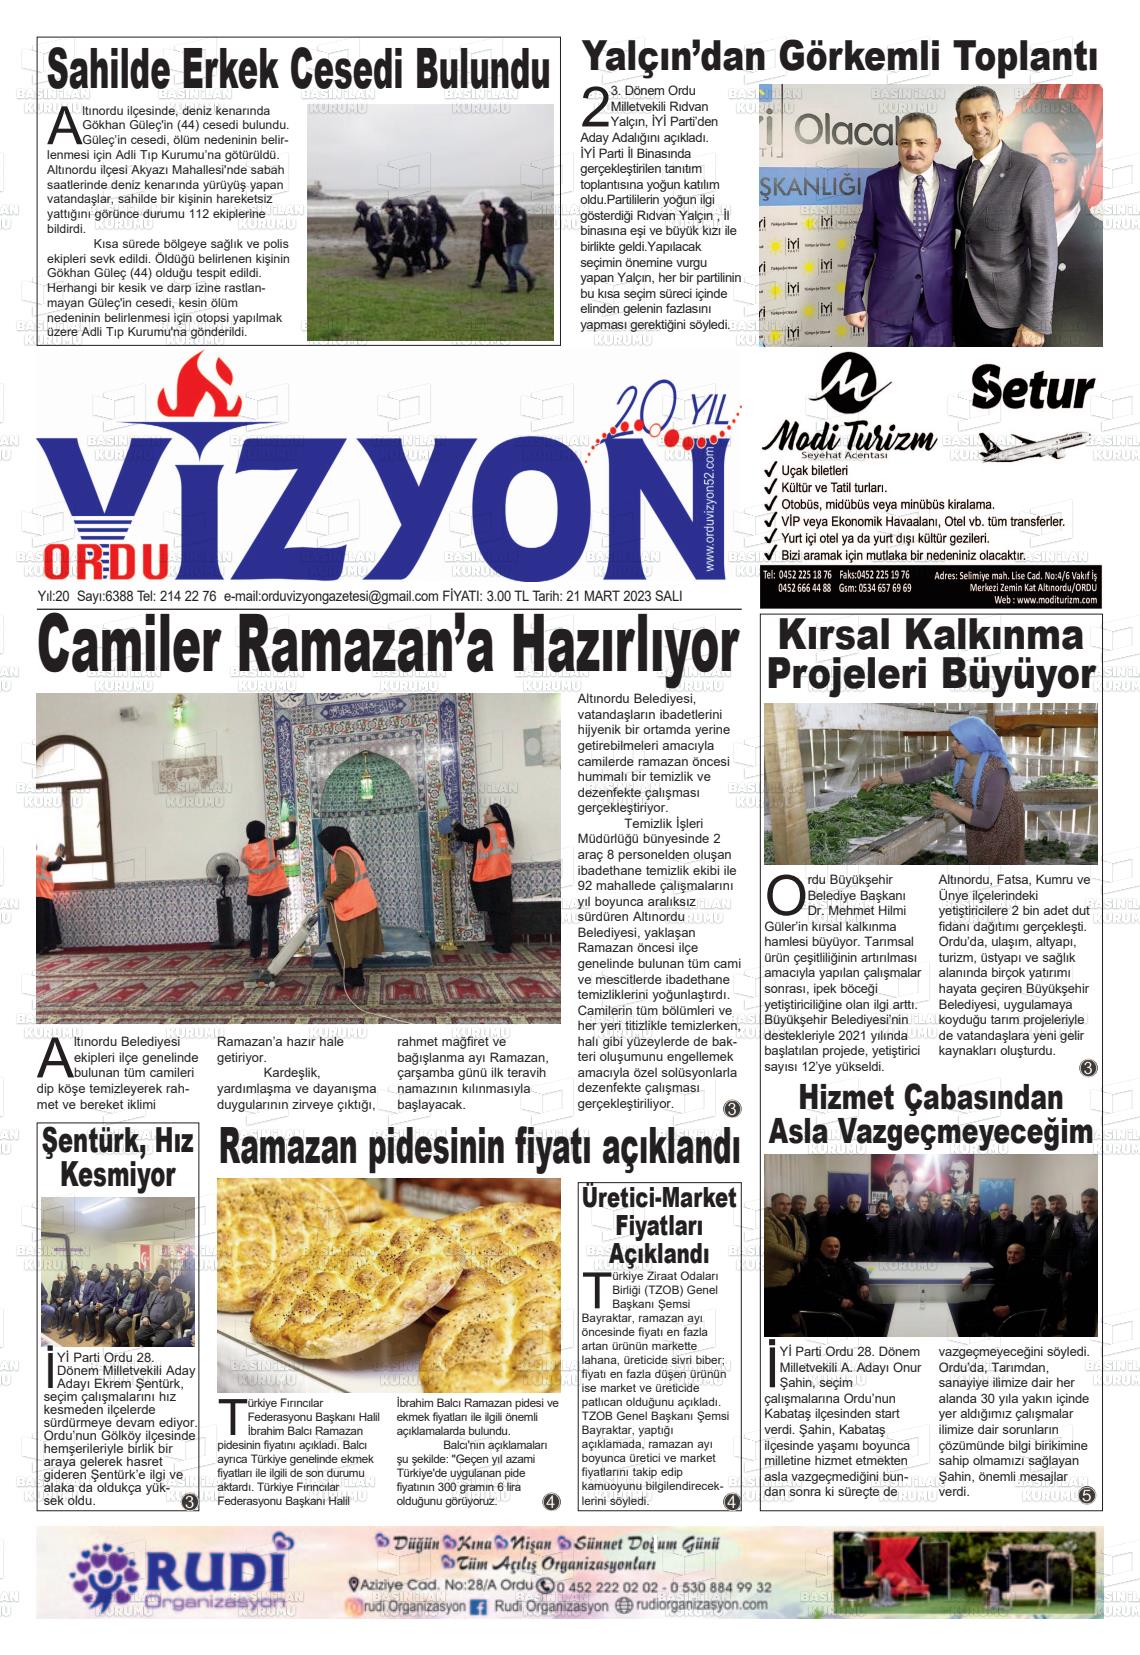 21 Mart 2023 Ordu Vizyon Gazete Manşeti